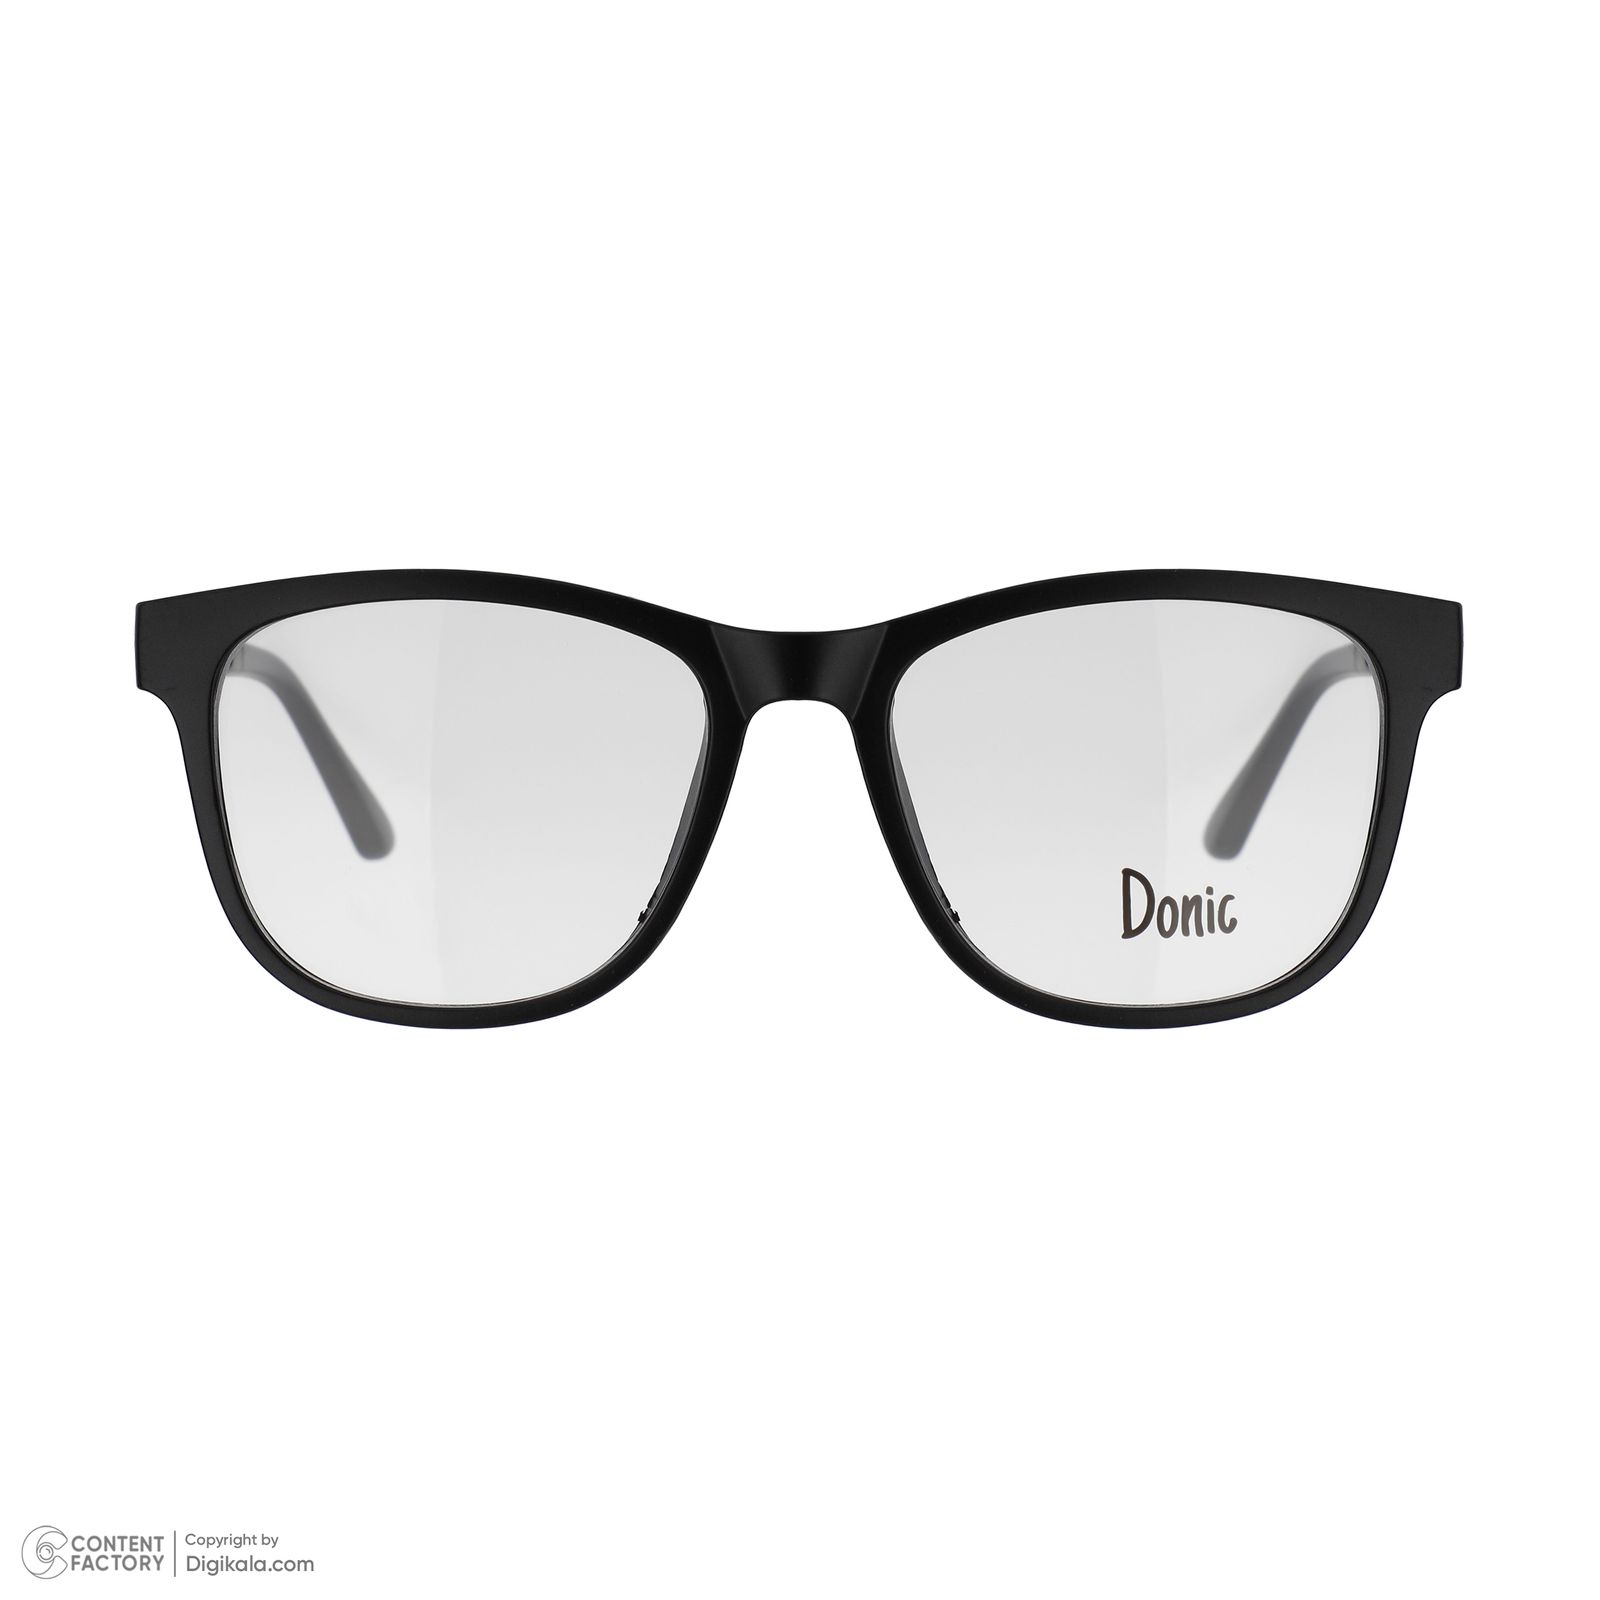 فریم عینک طبی دونیک مدل tr2230-c2 به همراه کاور آفتابی مجموعه 5 عددی -  - 3